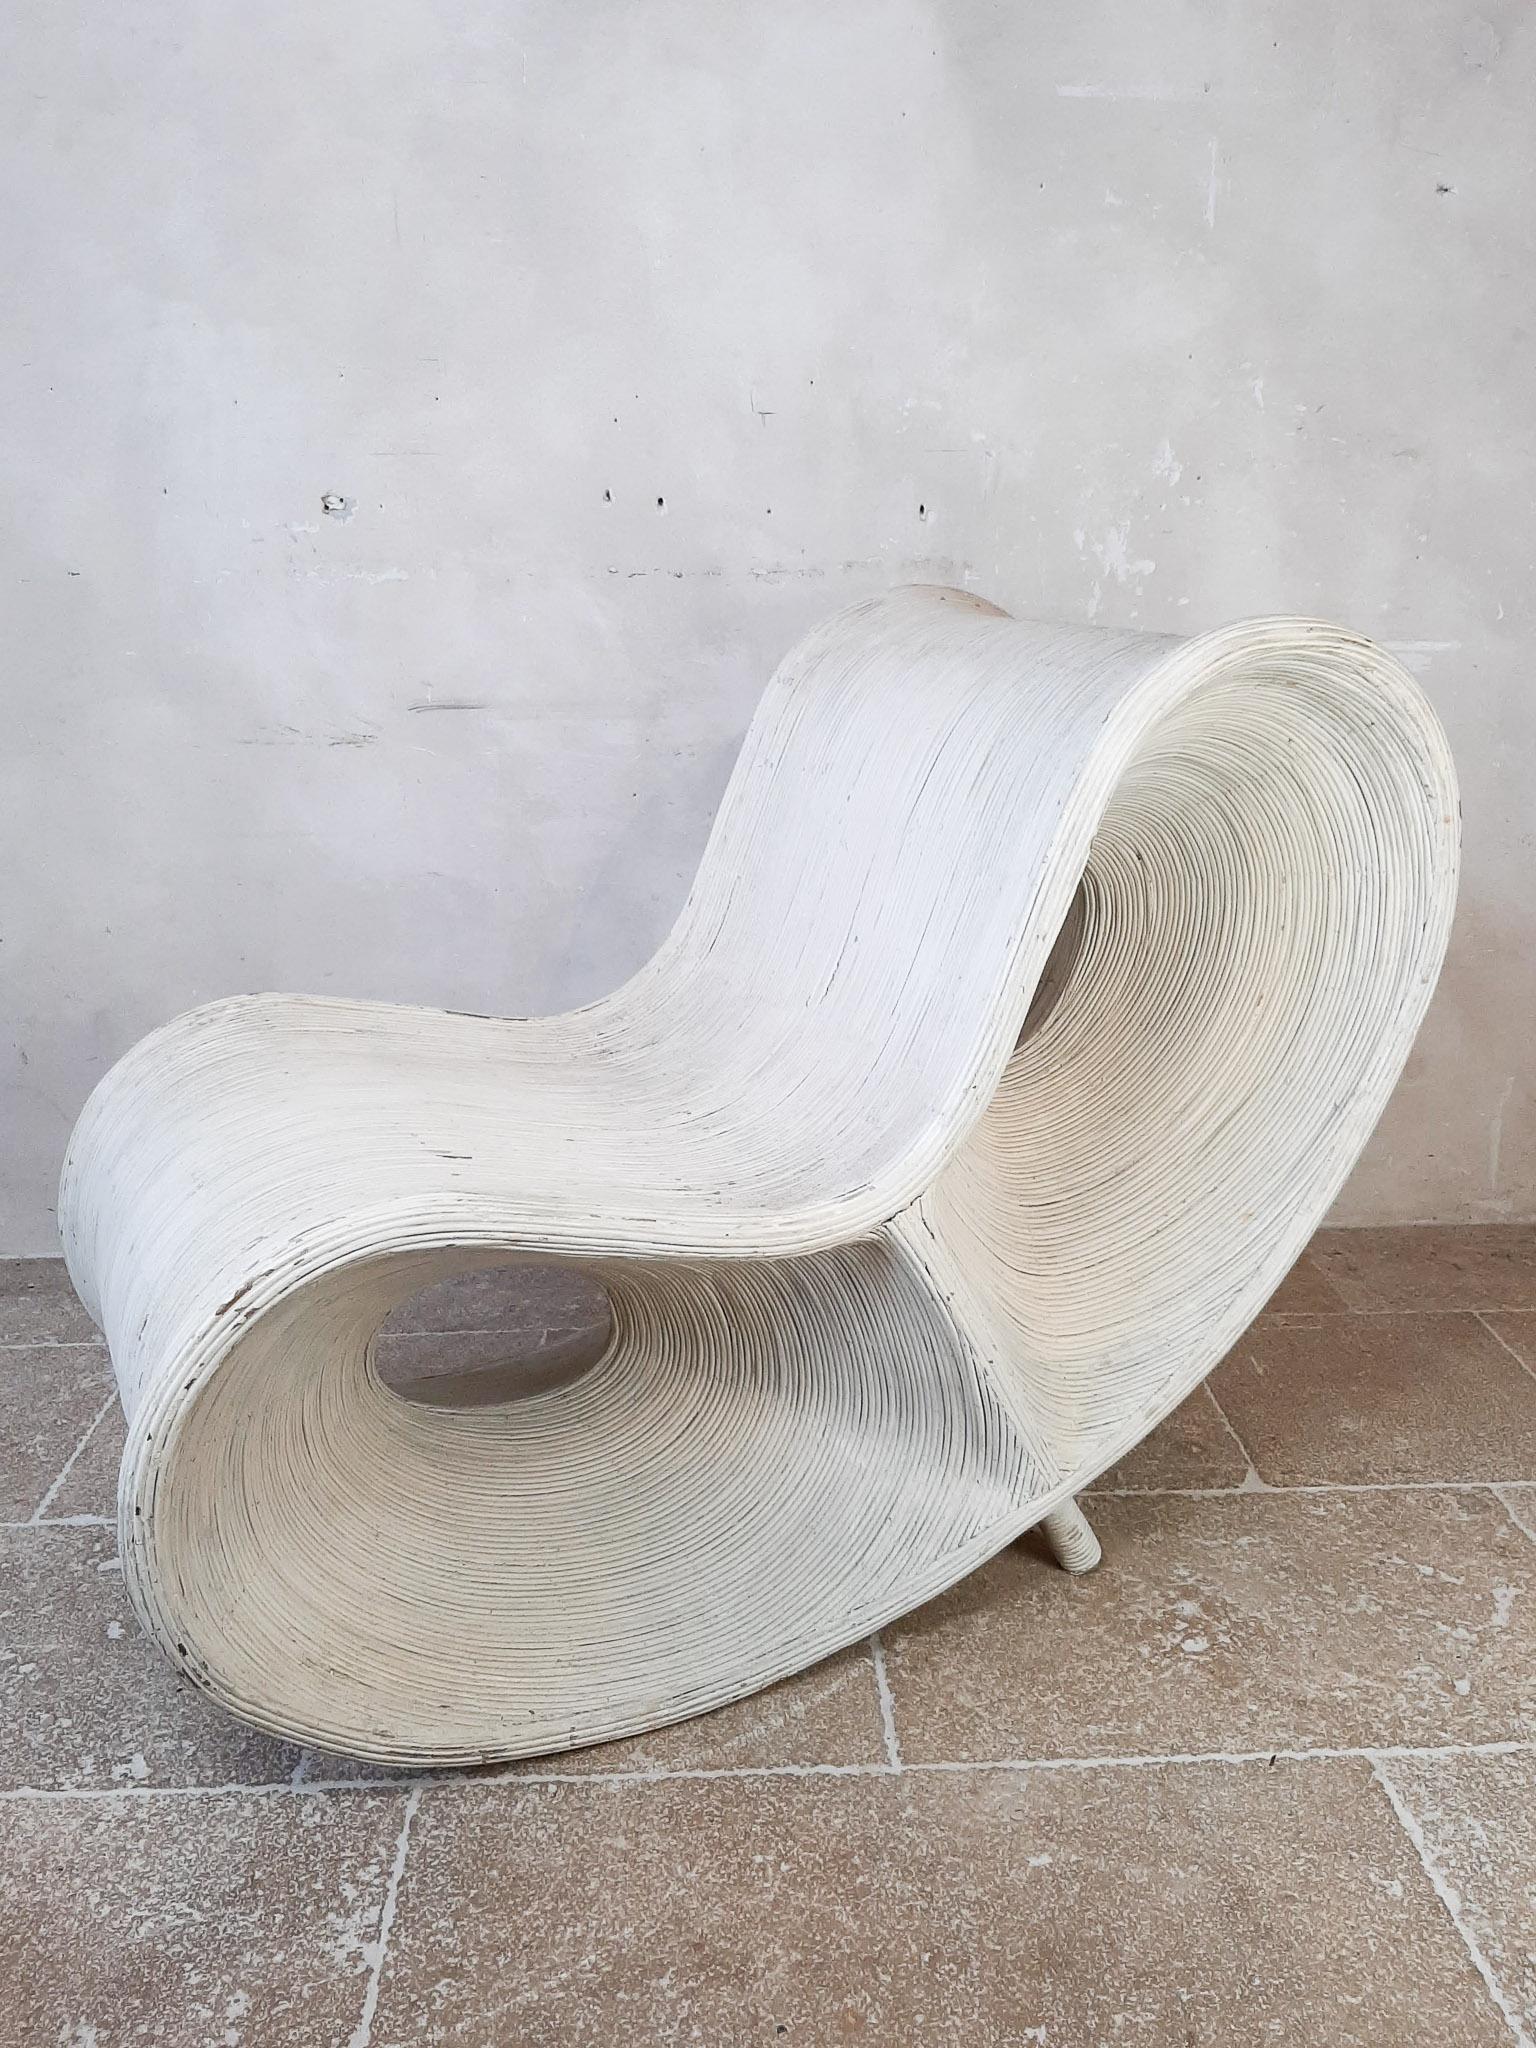 Ron Arad fauteuil de salon. Chaise en rotin blanc peint attribuée à Ron Arad.

L'art et la sculpture rencontrent le design. Finition à 360 degrés. Une pièce spéciale !

Dimensions : (L) 120 x (L) 66 x (H) 94 cm